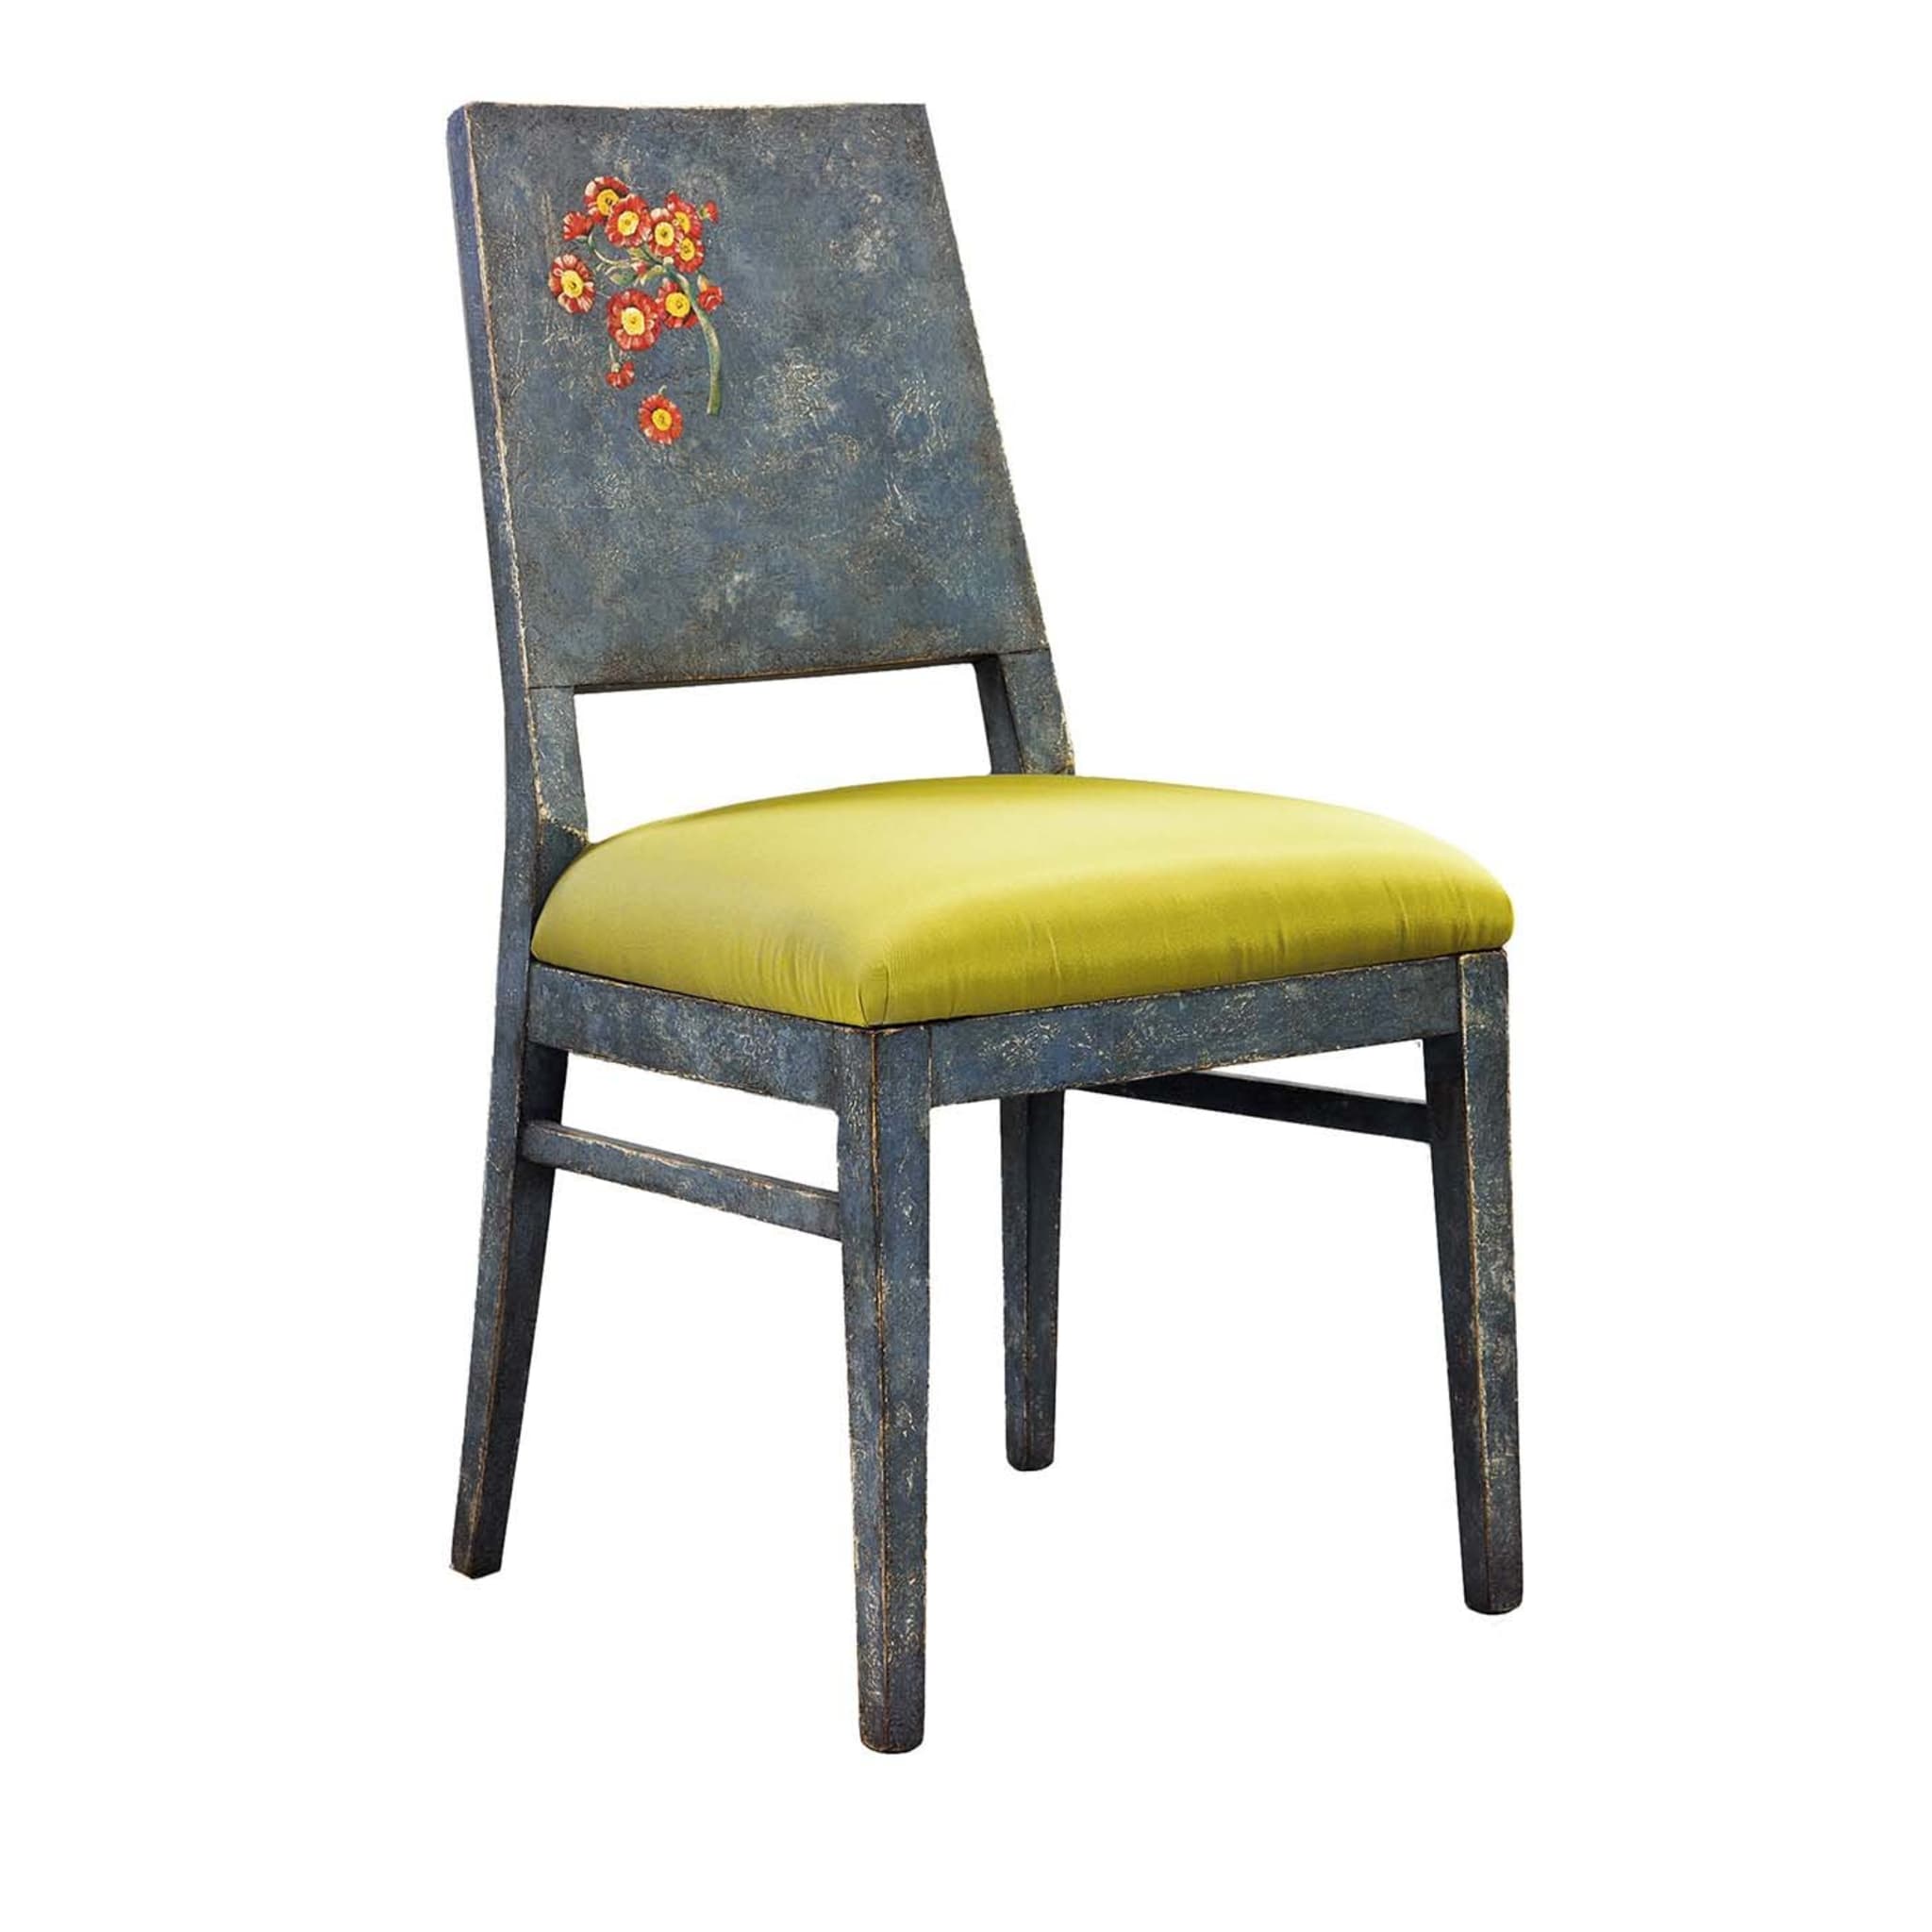 Indigo padded chair - Main view